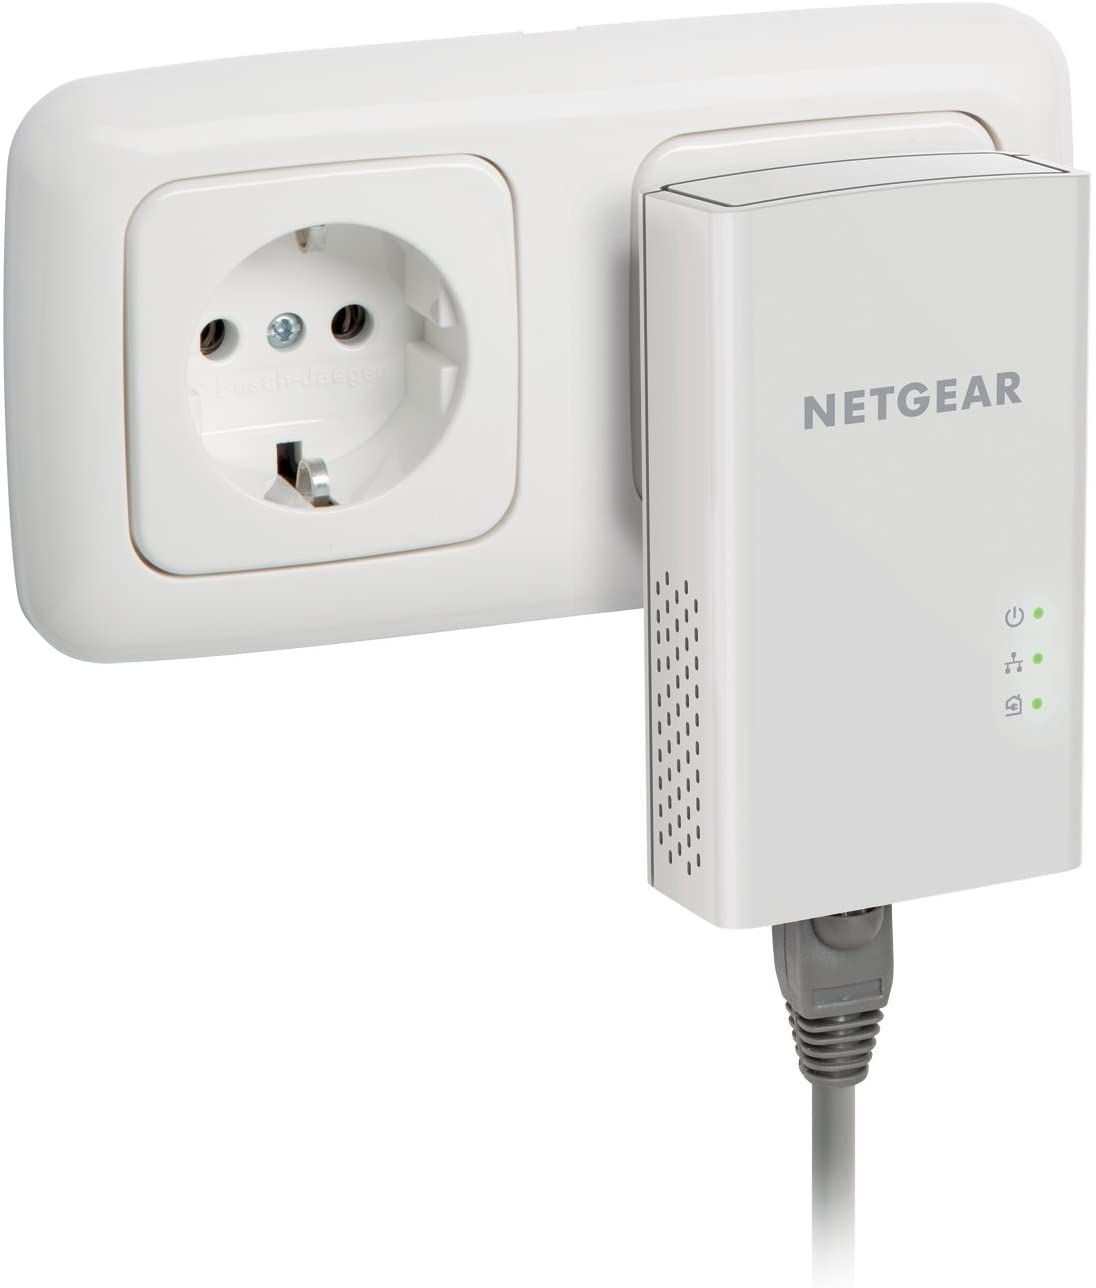 NETGEAR Powerline 1000 Adapter Set 2x PL1000 1Gbit Port Homeplug AV2